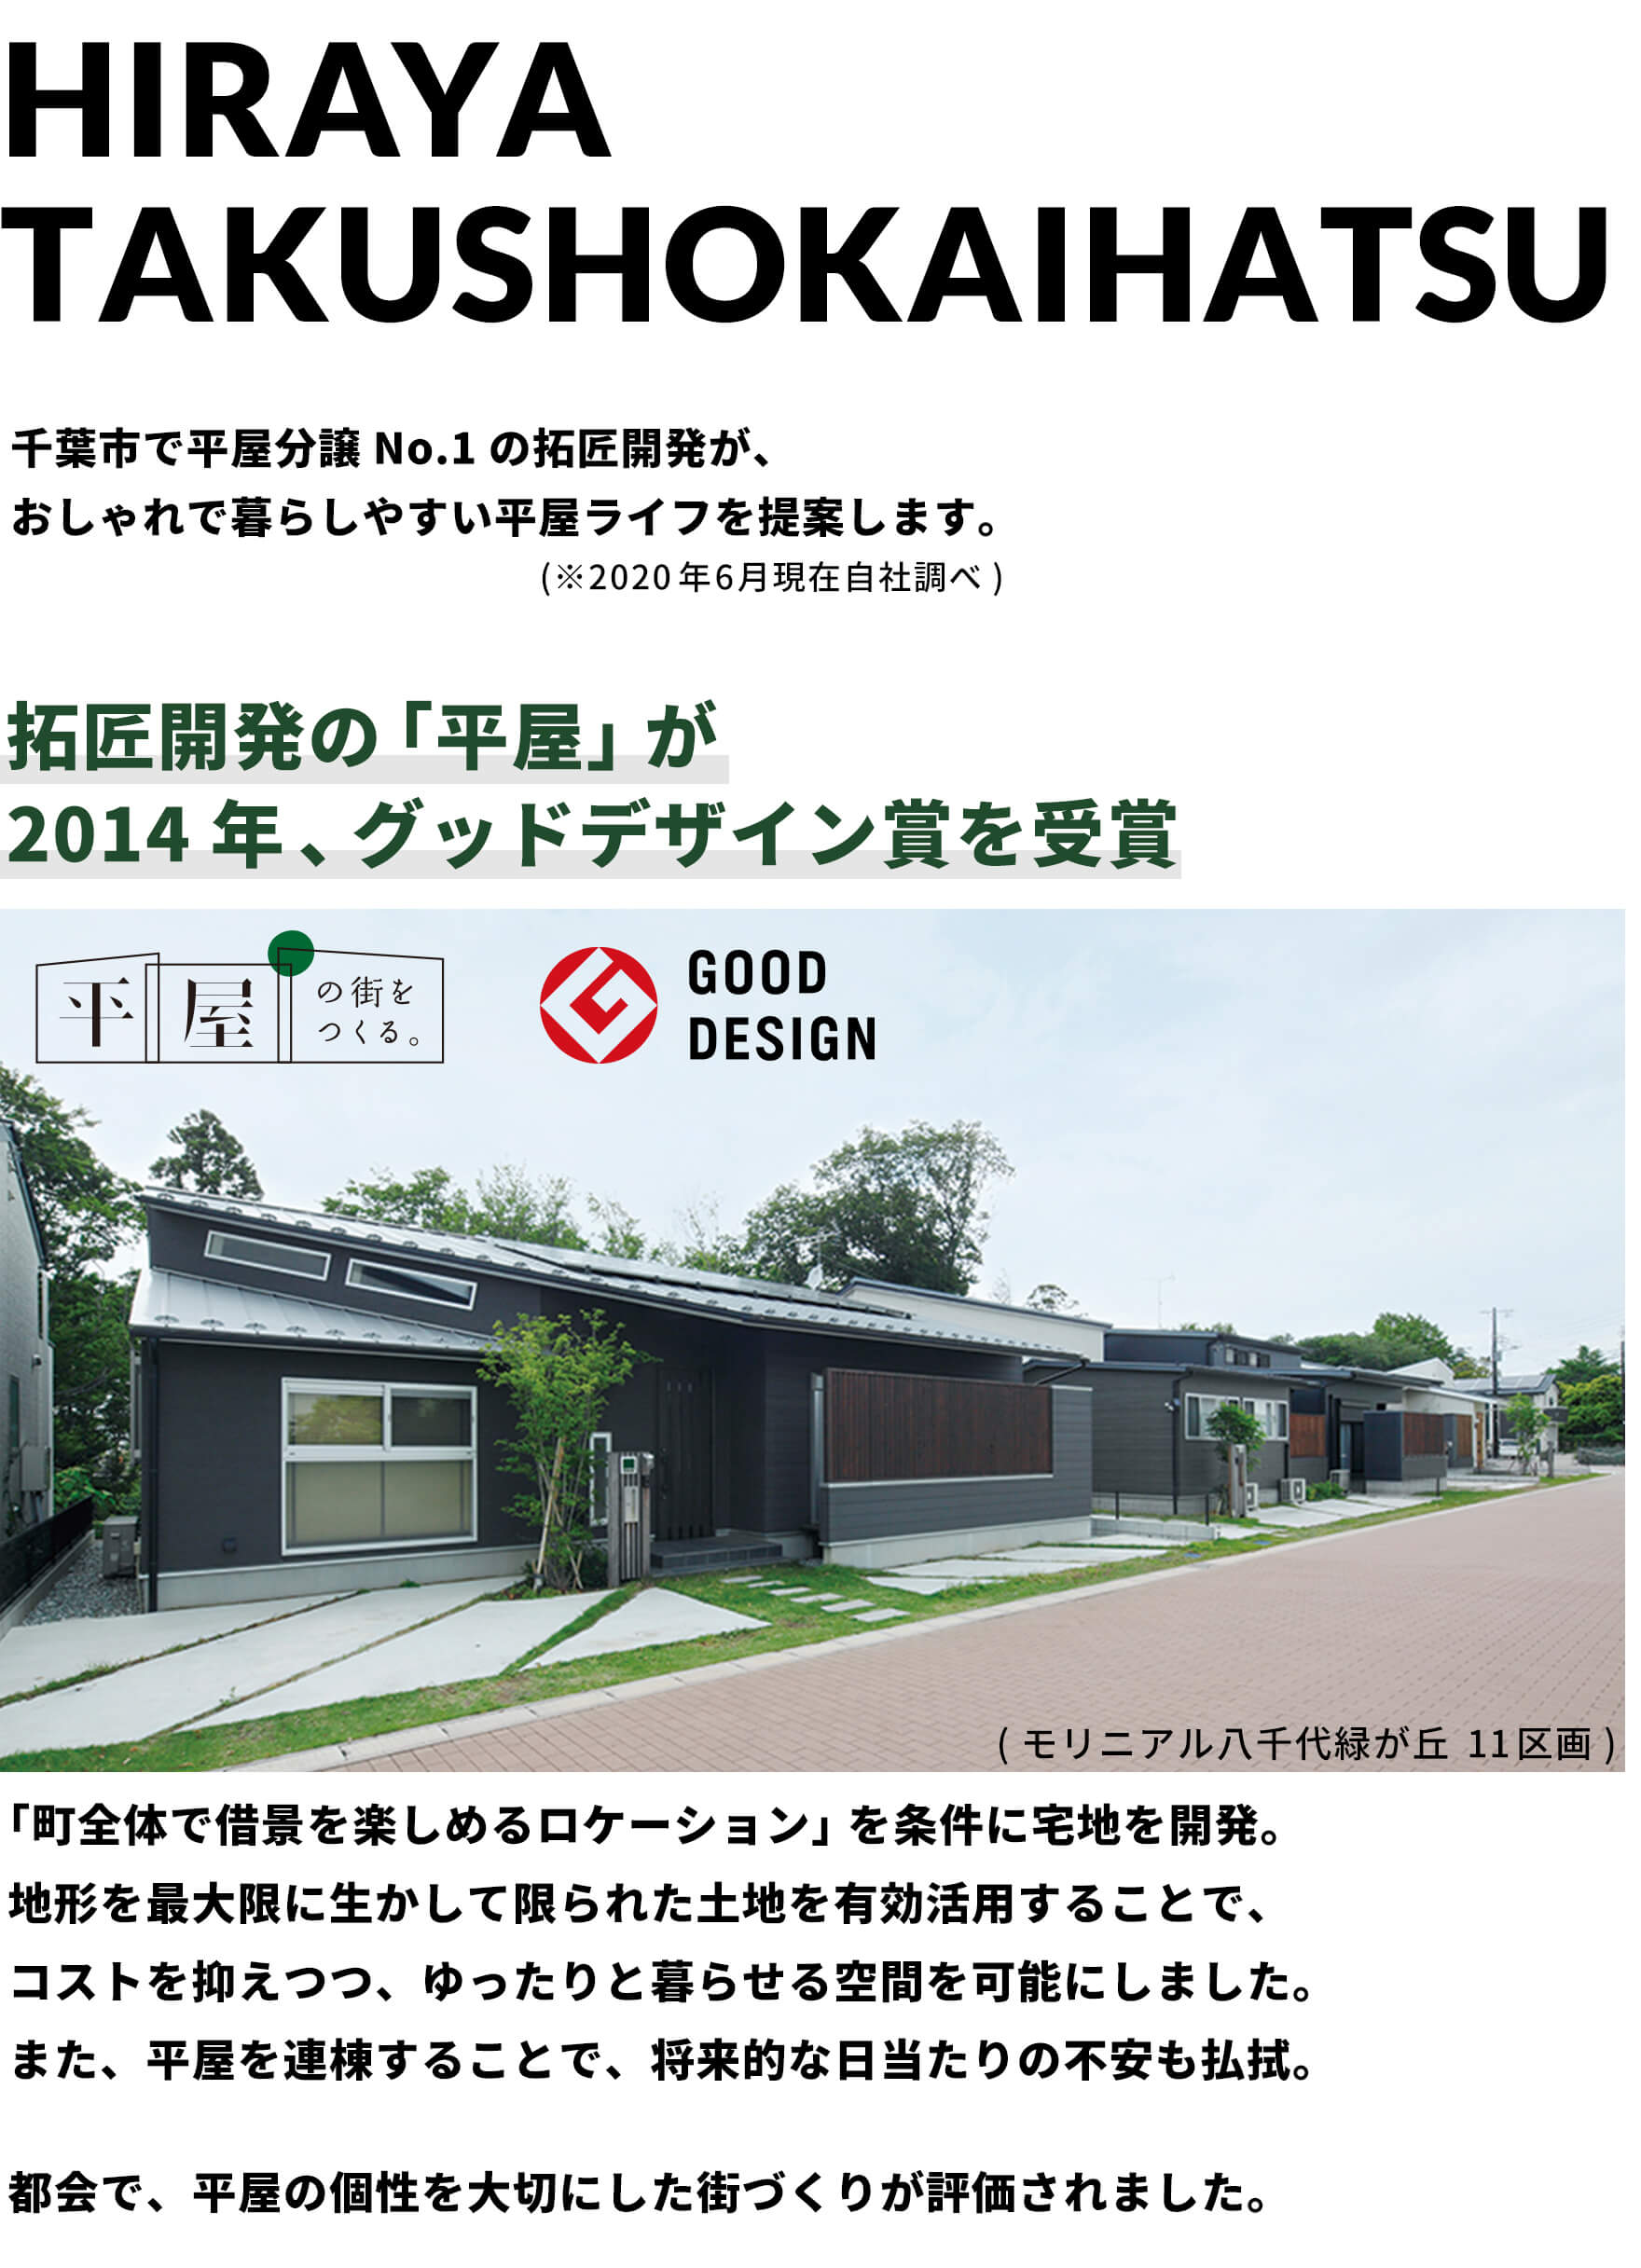 千葉市若葉区小倉町 拓匠開発の平屋は2014年グッドデザイン賞を受賞